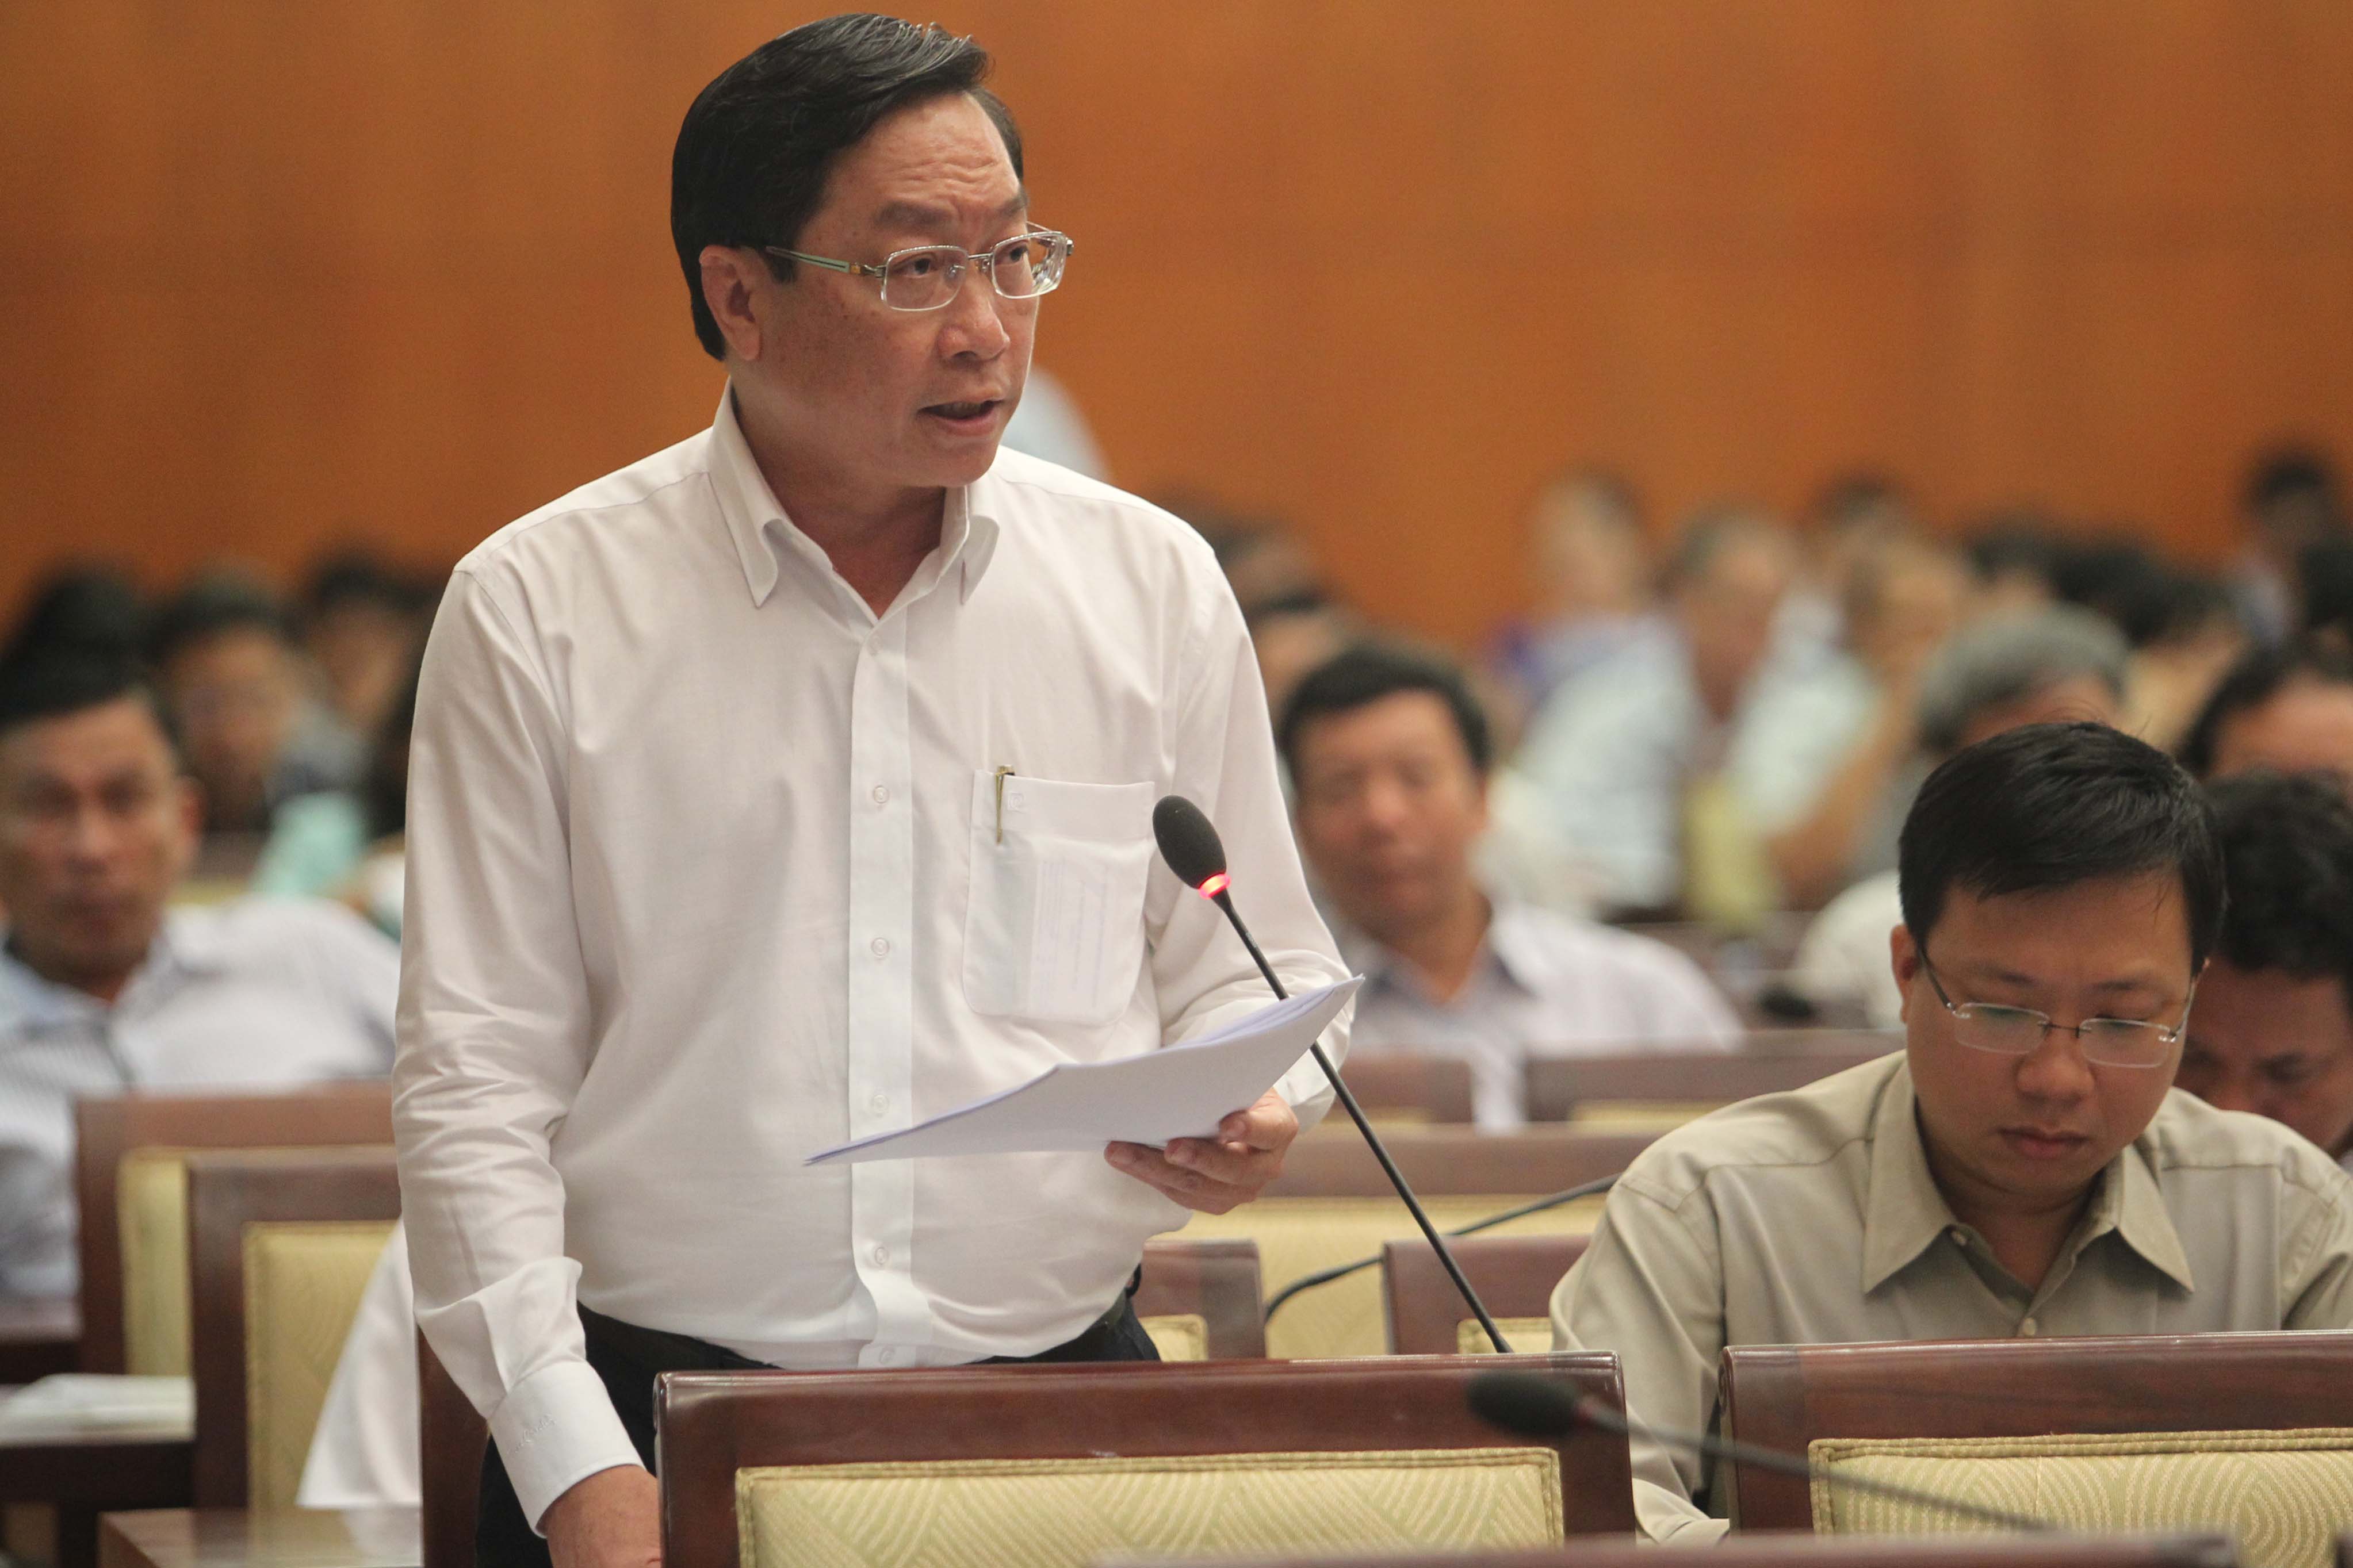 
Giám đốc Sở Y tế TP Nguyễn Tấn Bỉnh trả lời về tình hình an toàn vệ sinh thực phẩm
